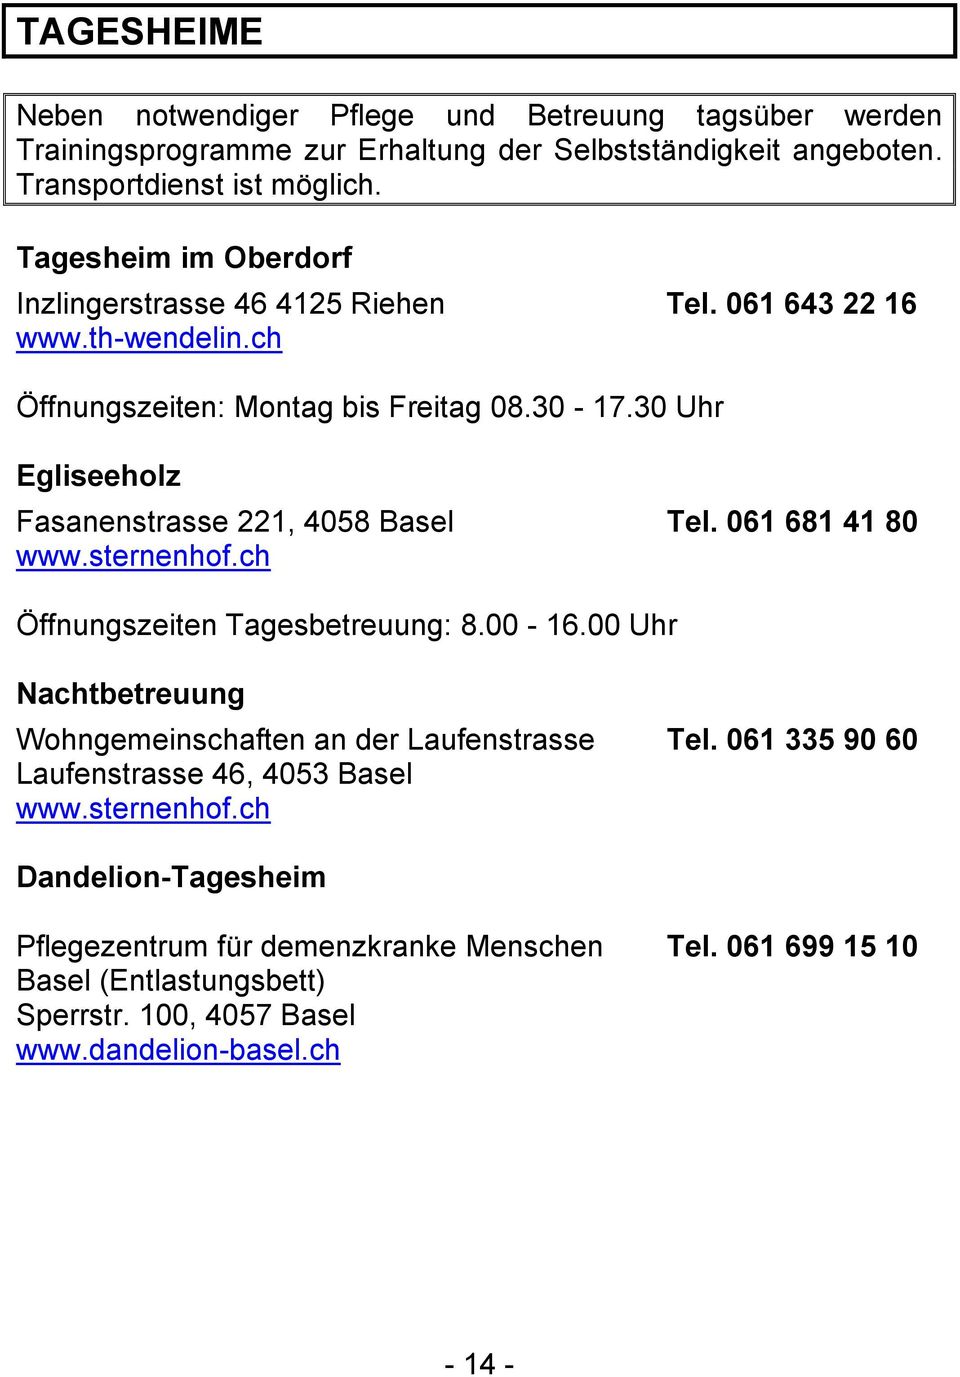 30 Uhr Egliseeholz Fasanenstrasse 221, 4058 Basel www.sternenhof.ch Tel. 061 681 41 80 Öffnungszeiten Tagesbetreuung: 8.00-16.